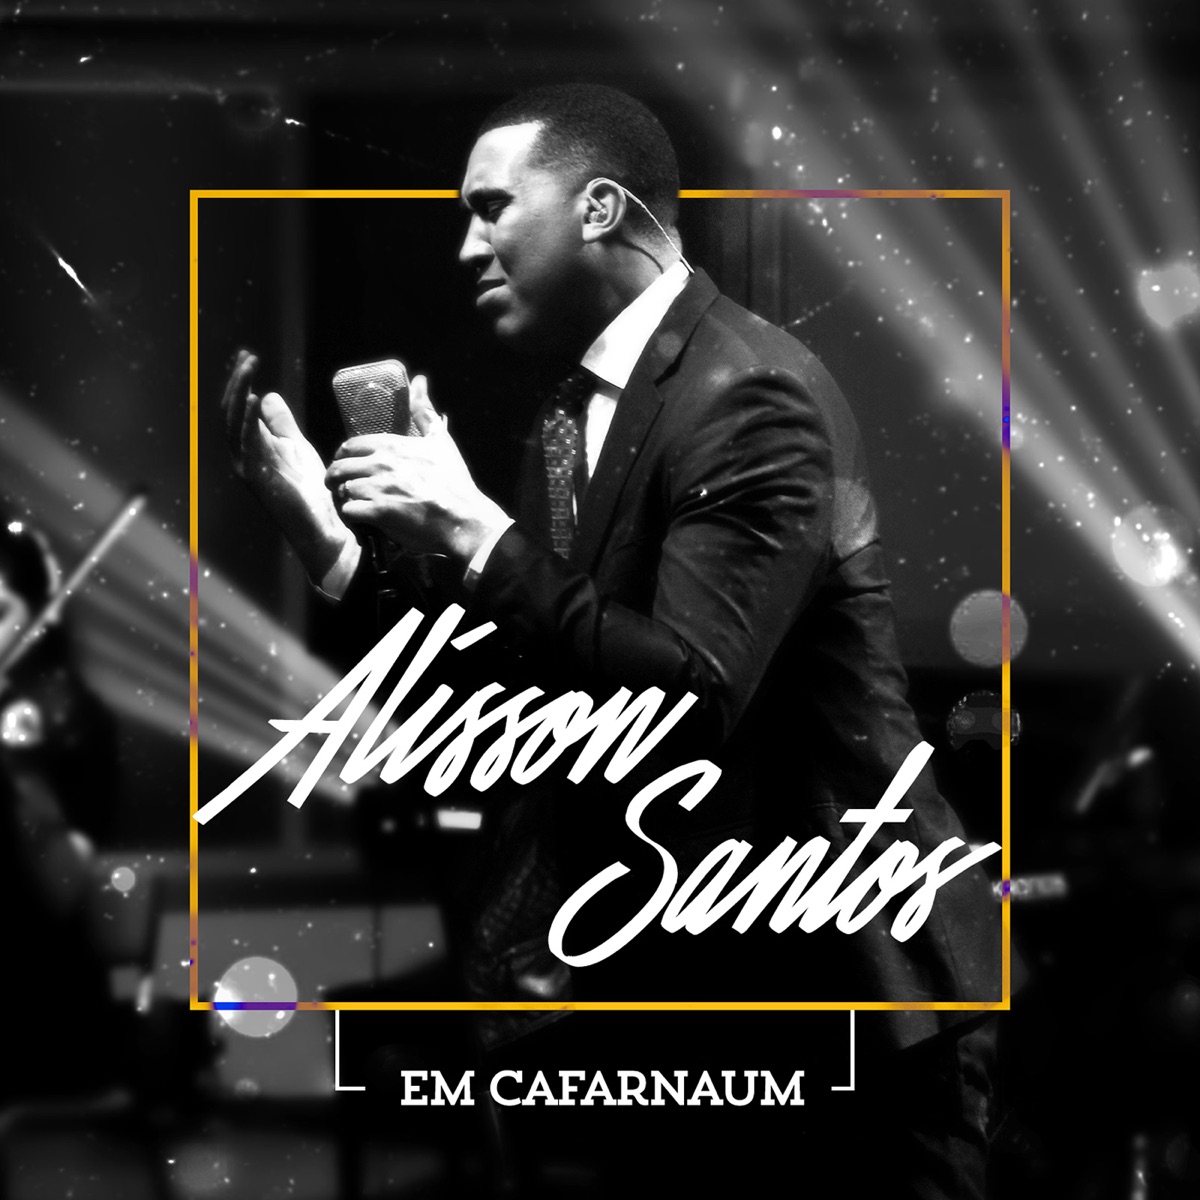 Calma Meu Filho - Single — álbum de Alisson Santos — Apple Music